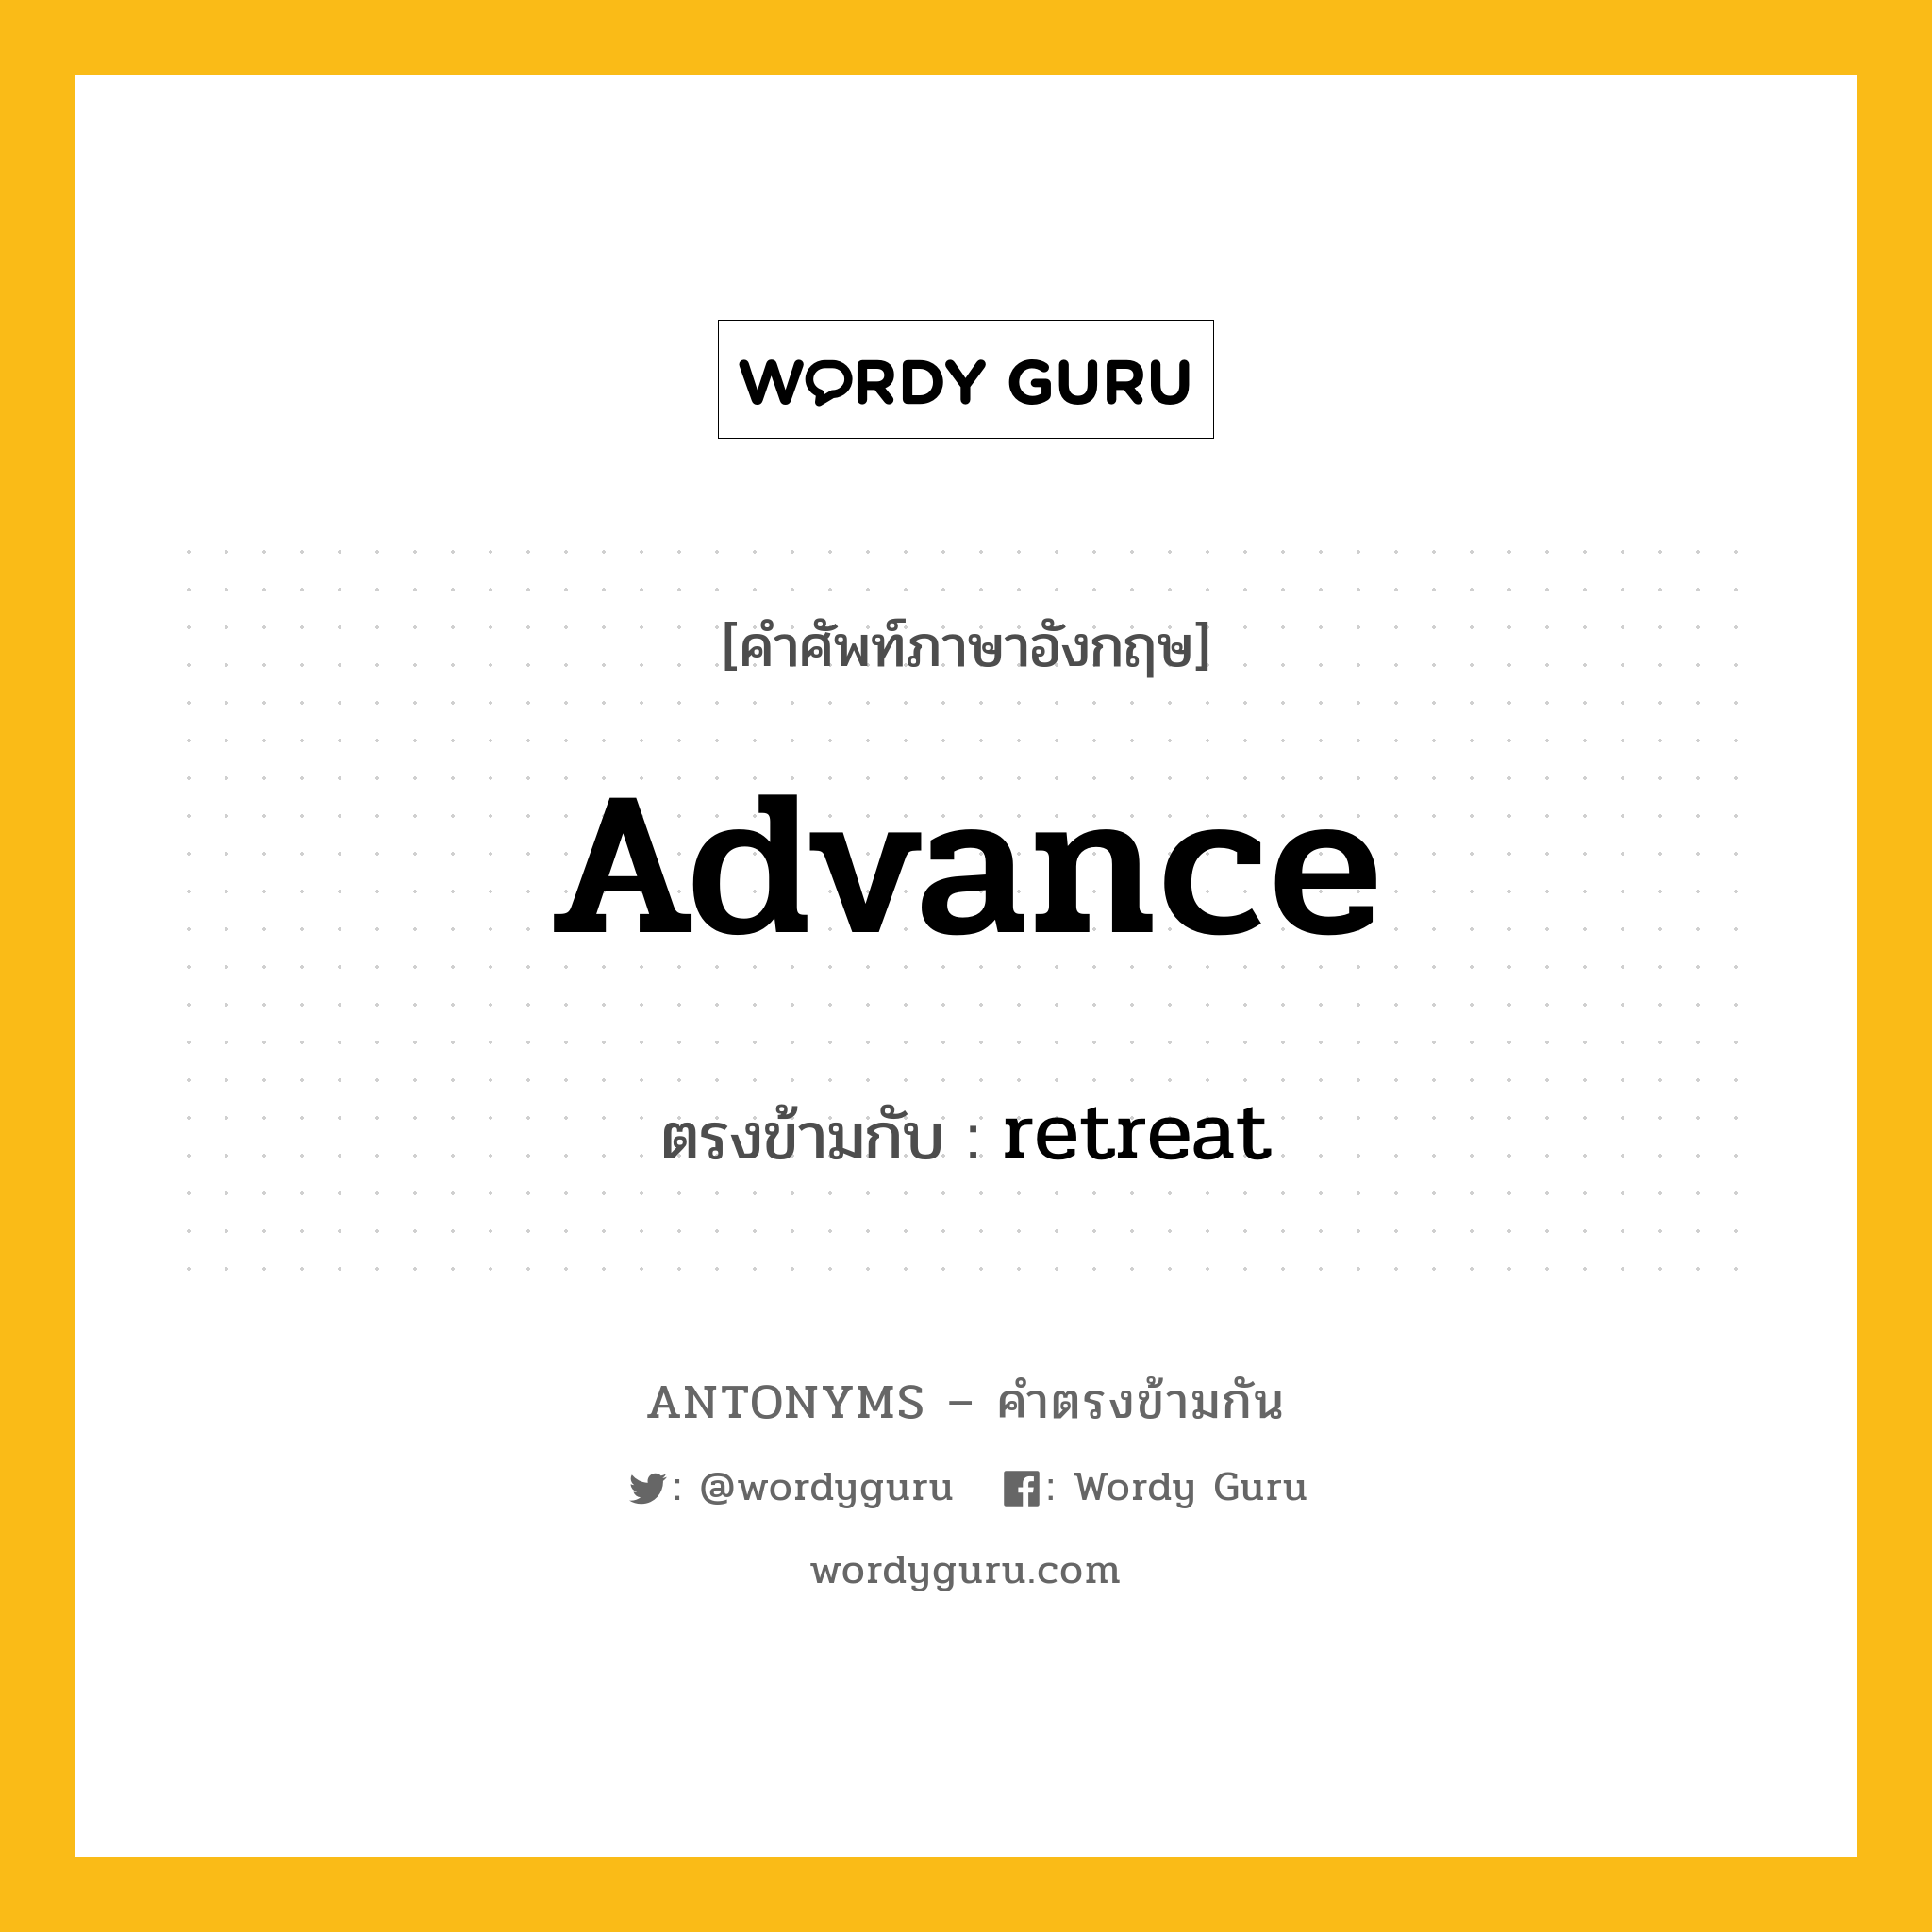 advance เป็นคำตรงข้ามกับคำไหนบ้าง?, คำศัพท์ภาษาอังกฤษ advance ตรงข้ามกับ retreat หมวด retreat